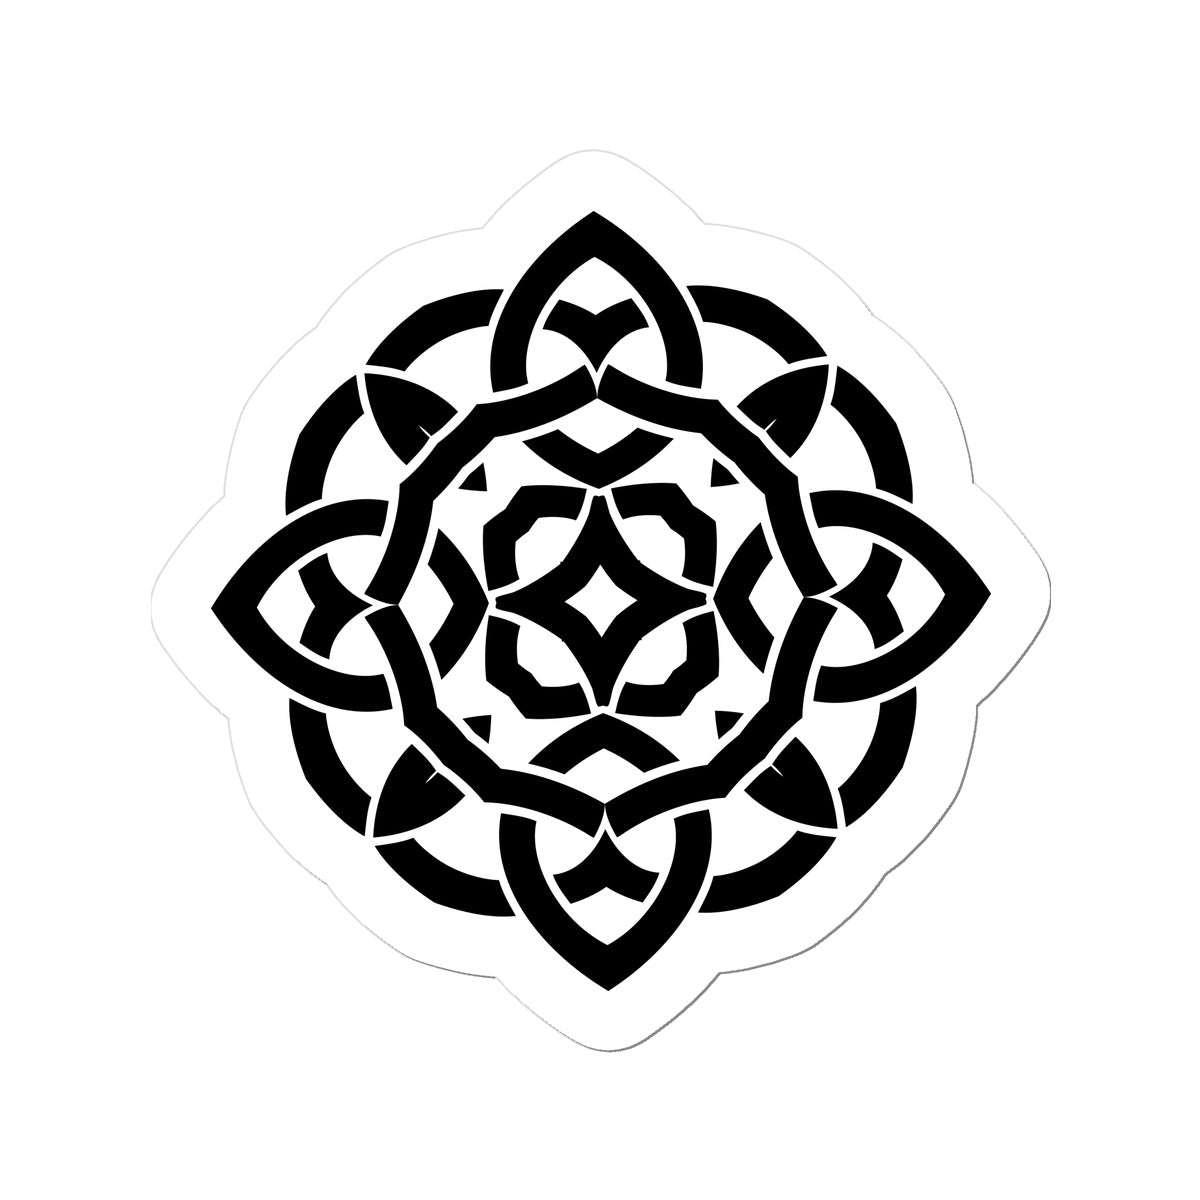 Celtic Flower Sticker